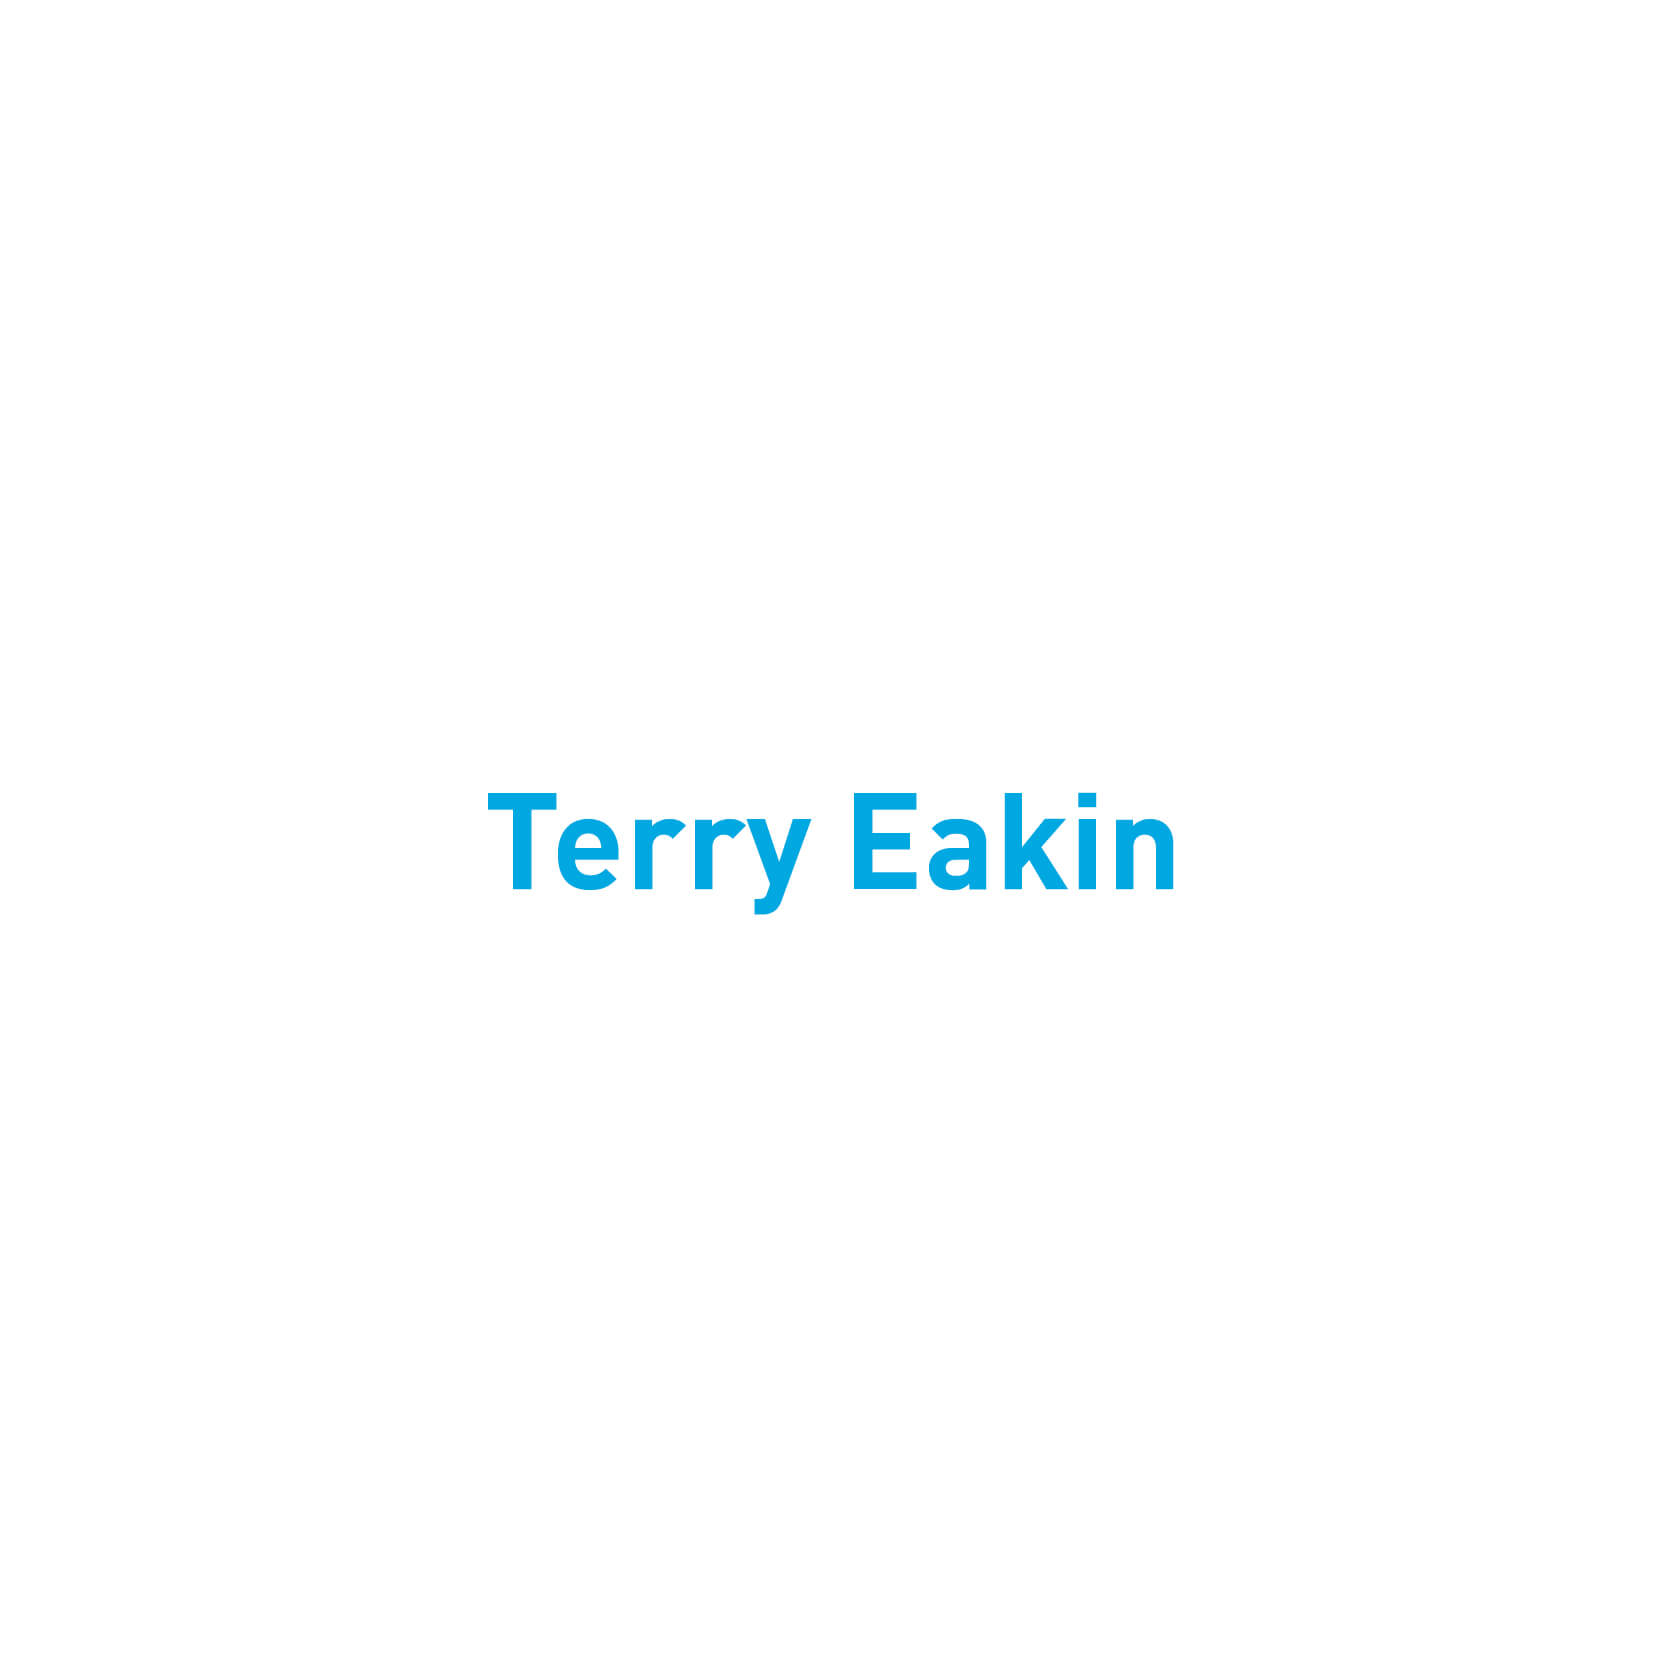 Terry Eakin